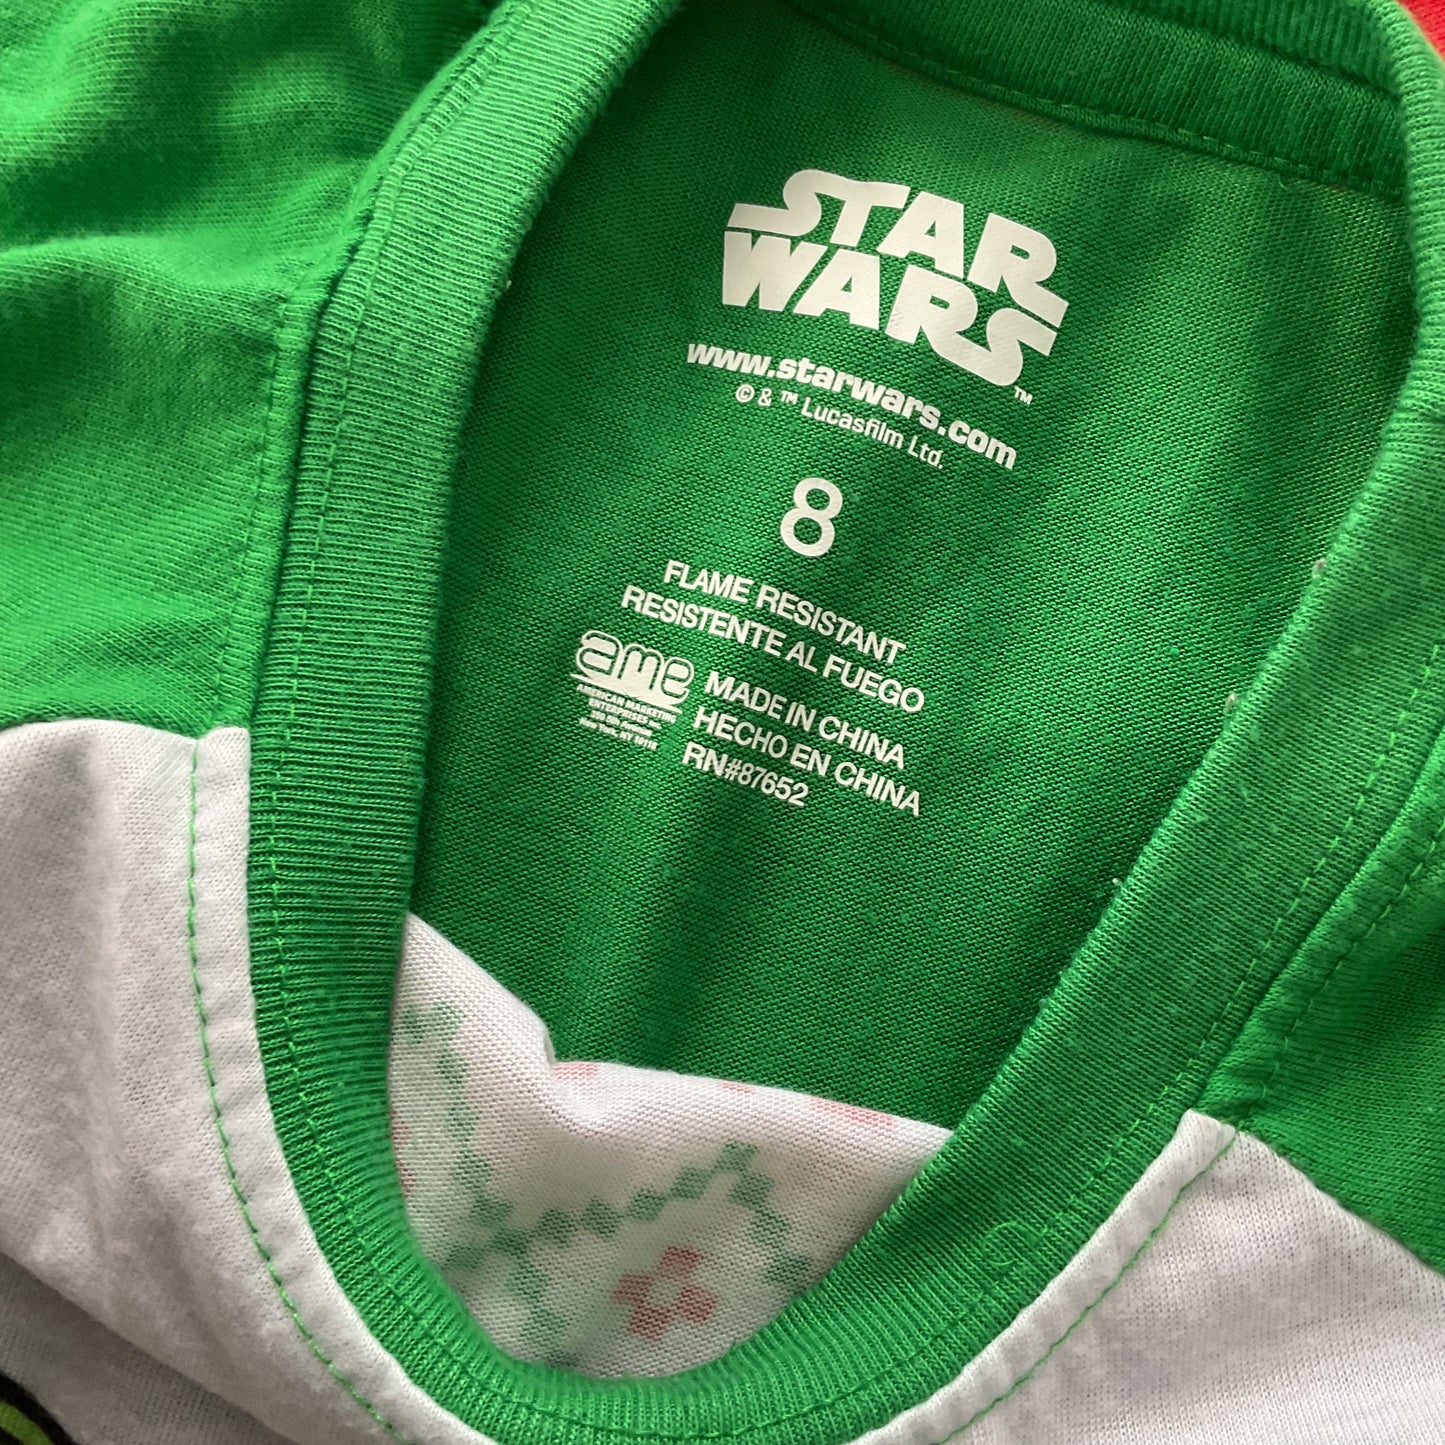 Star Wars Kids Sleepwear Top Size 8.